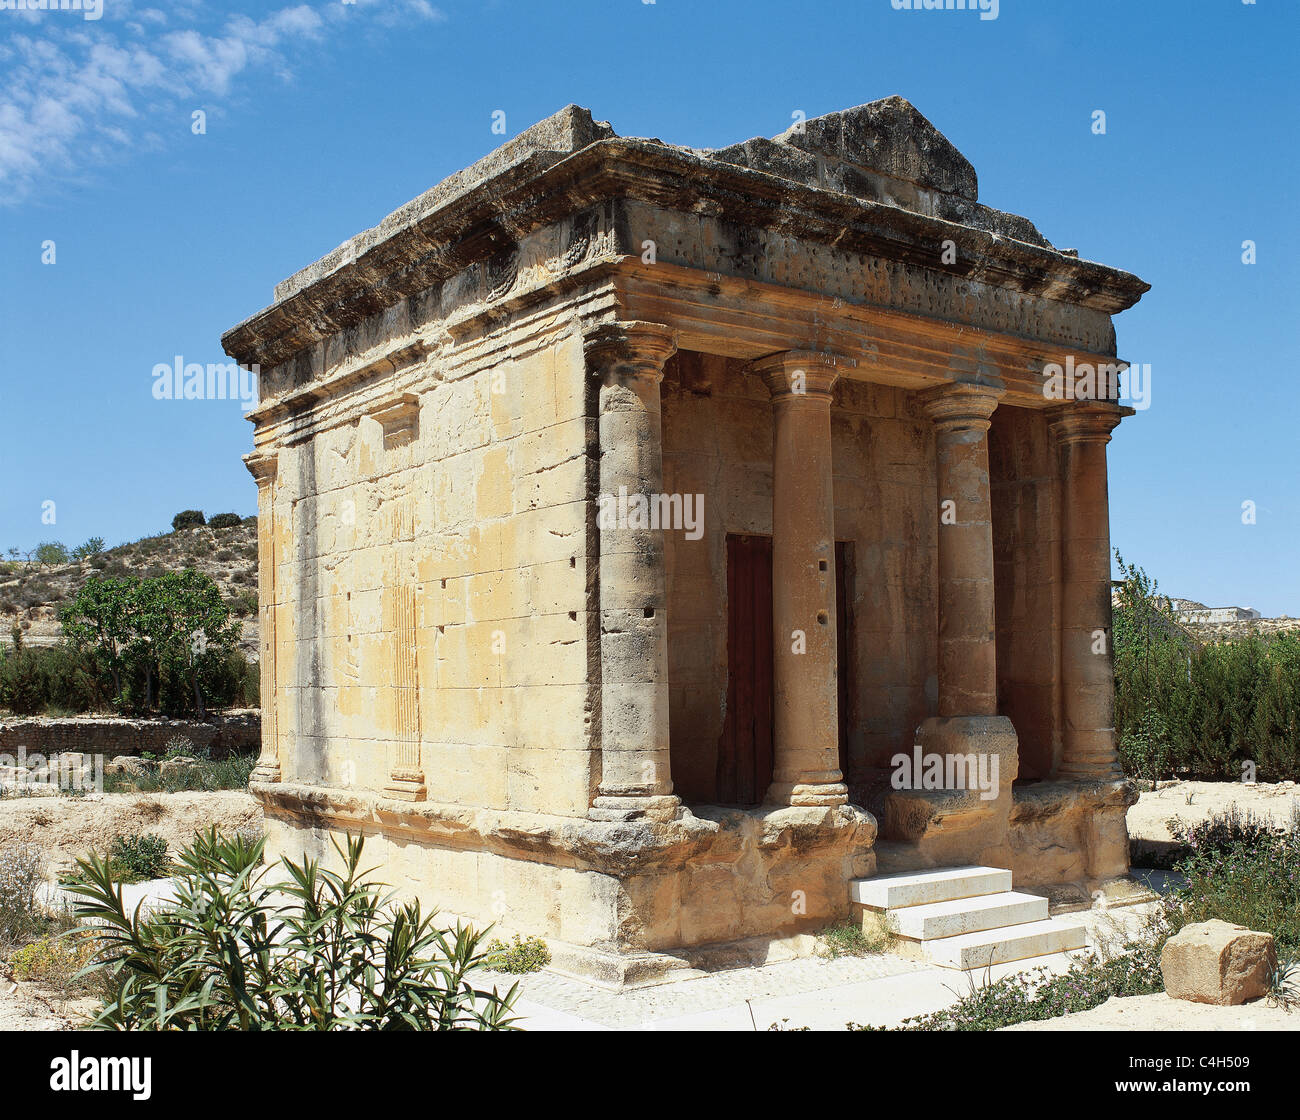 Mausoleo romano di Fabara, dedicata a Lucio Emilio Lupo. Ii secolo A.C. Aragona. Spagna. Foto Stock